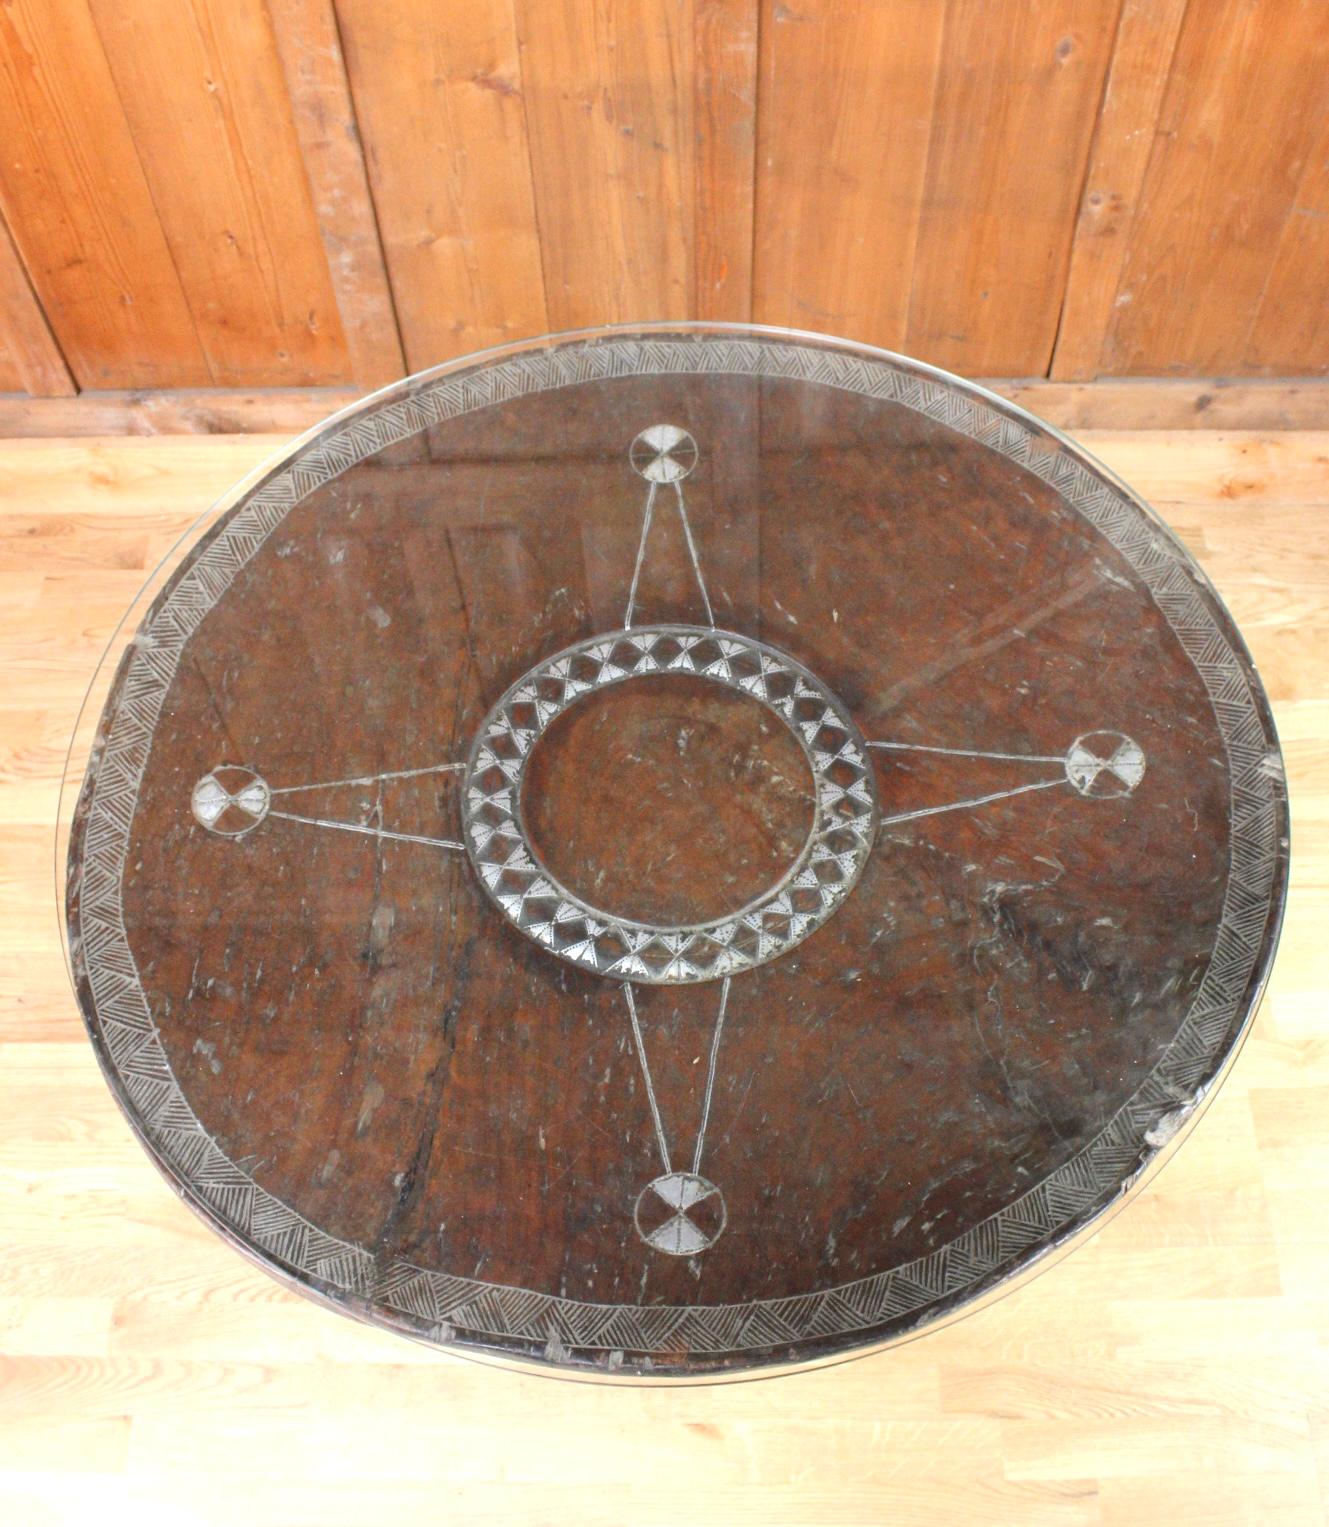 Cette table du 20e siècle est une véritable table rituelle du peuple malinké, parfois utilisée pour des sacrifices.
Le peuple malinké est un peuple d'Afrique de l'Ouest (Mali, Sénégal).
Cette grande table en bois indigène est gravée et incrustée de